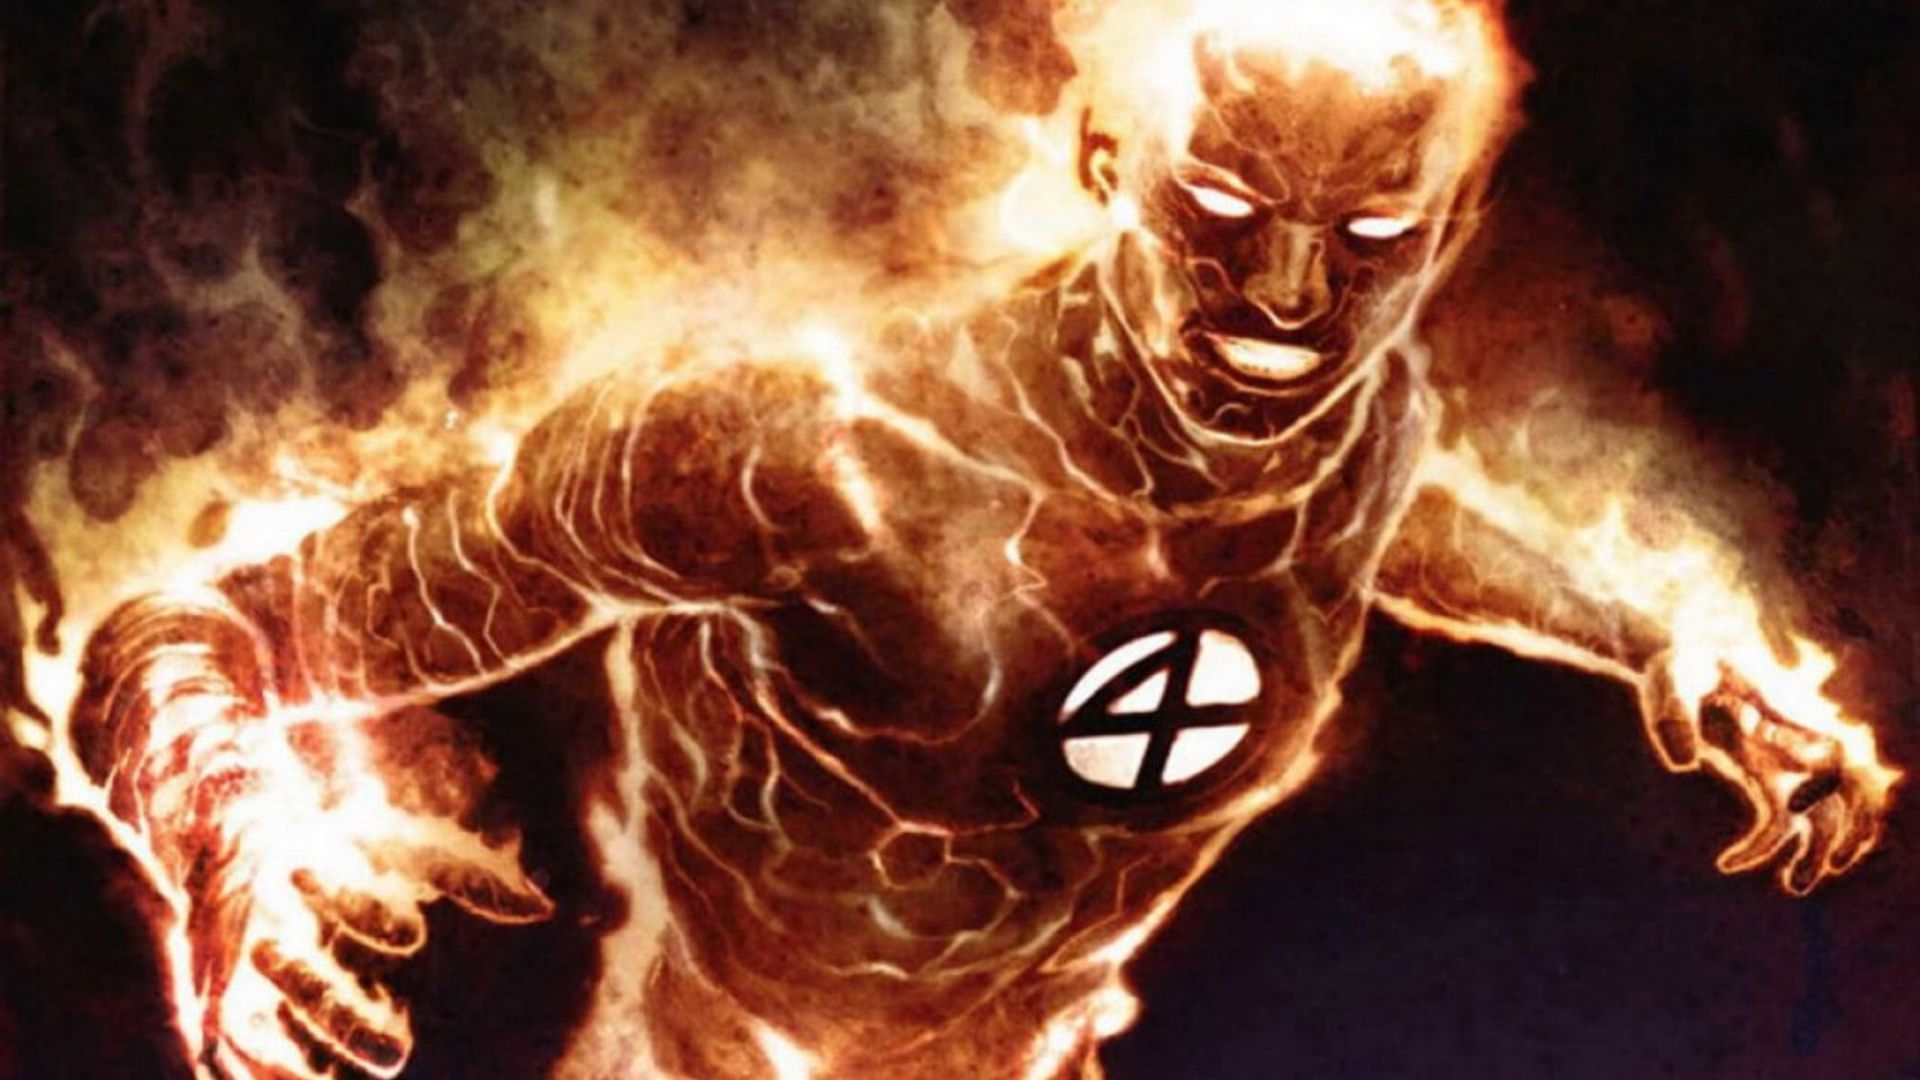 پوستر جدید فیلم The Fantastic Four با محوریت شخصیت هیومن تورچ